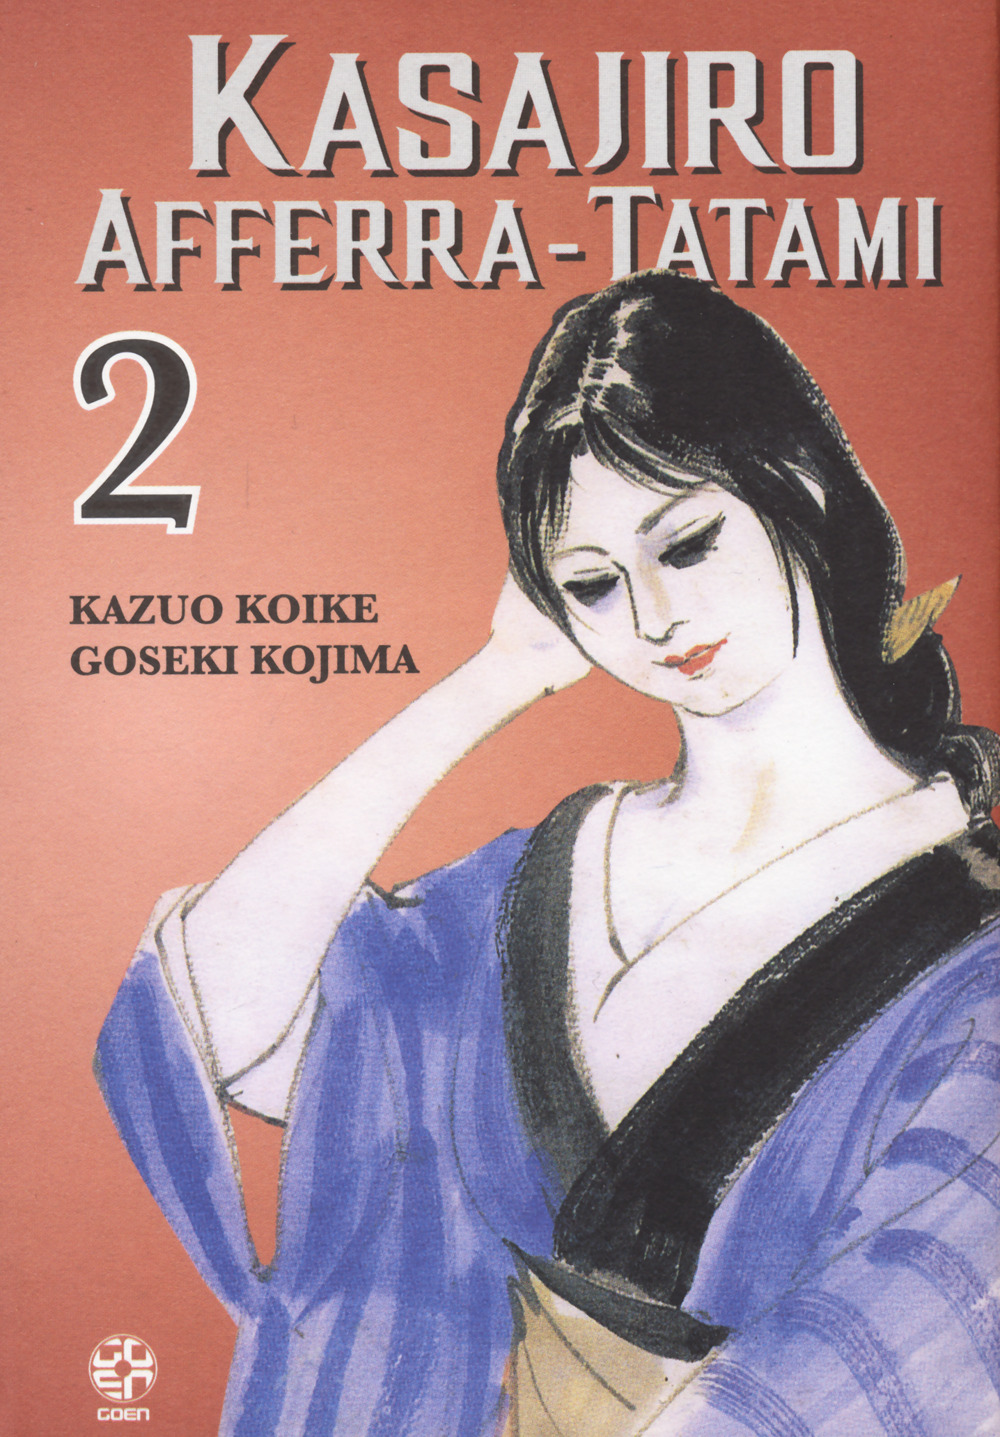 Kasajiro afferra-tatami. Vol. 2